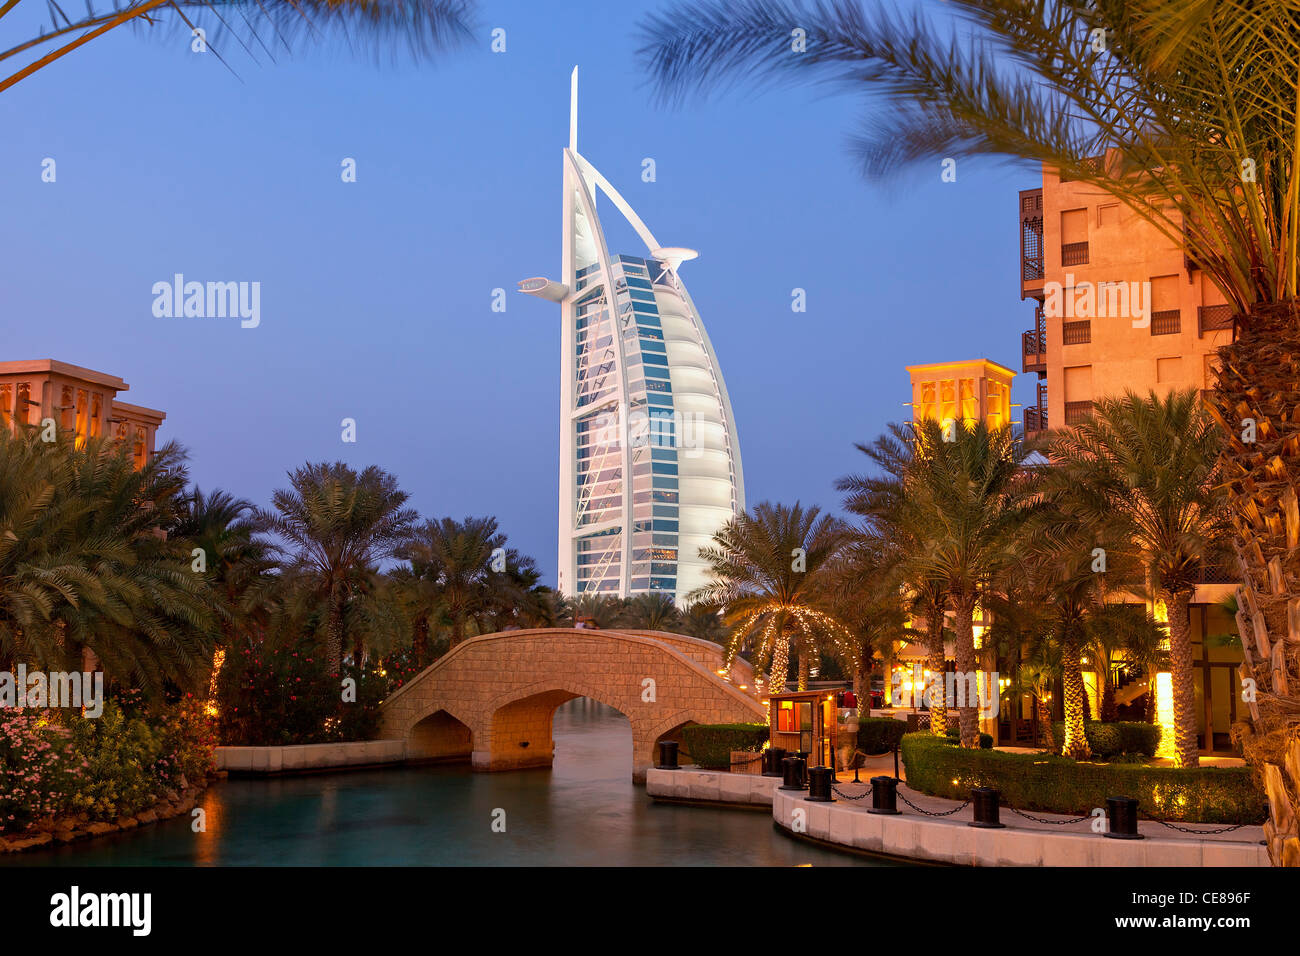 Asia, Arabia, Dubai Emirate, Dubai, Madinat Jumeirah and the Burj al Arab Hotel Stock Photo